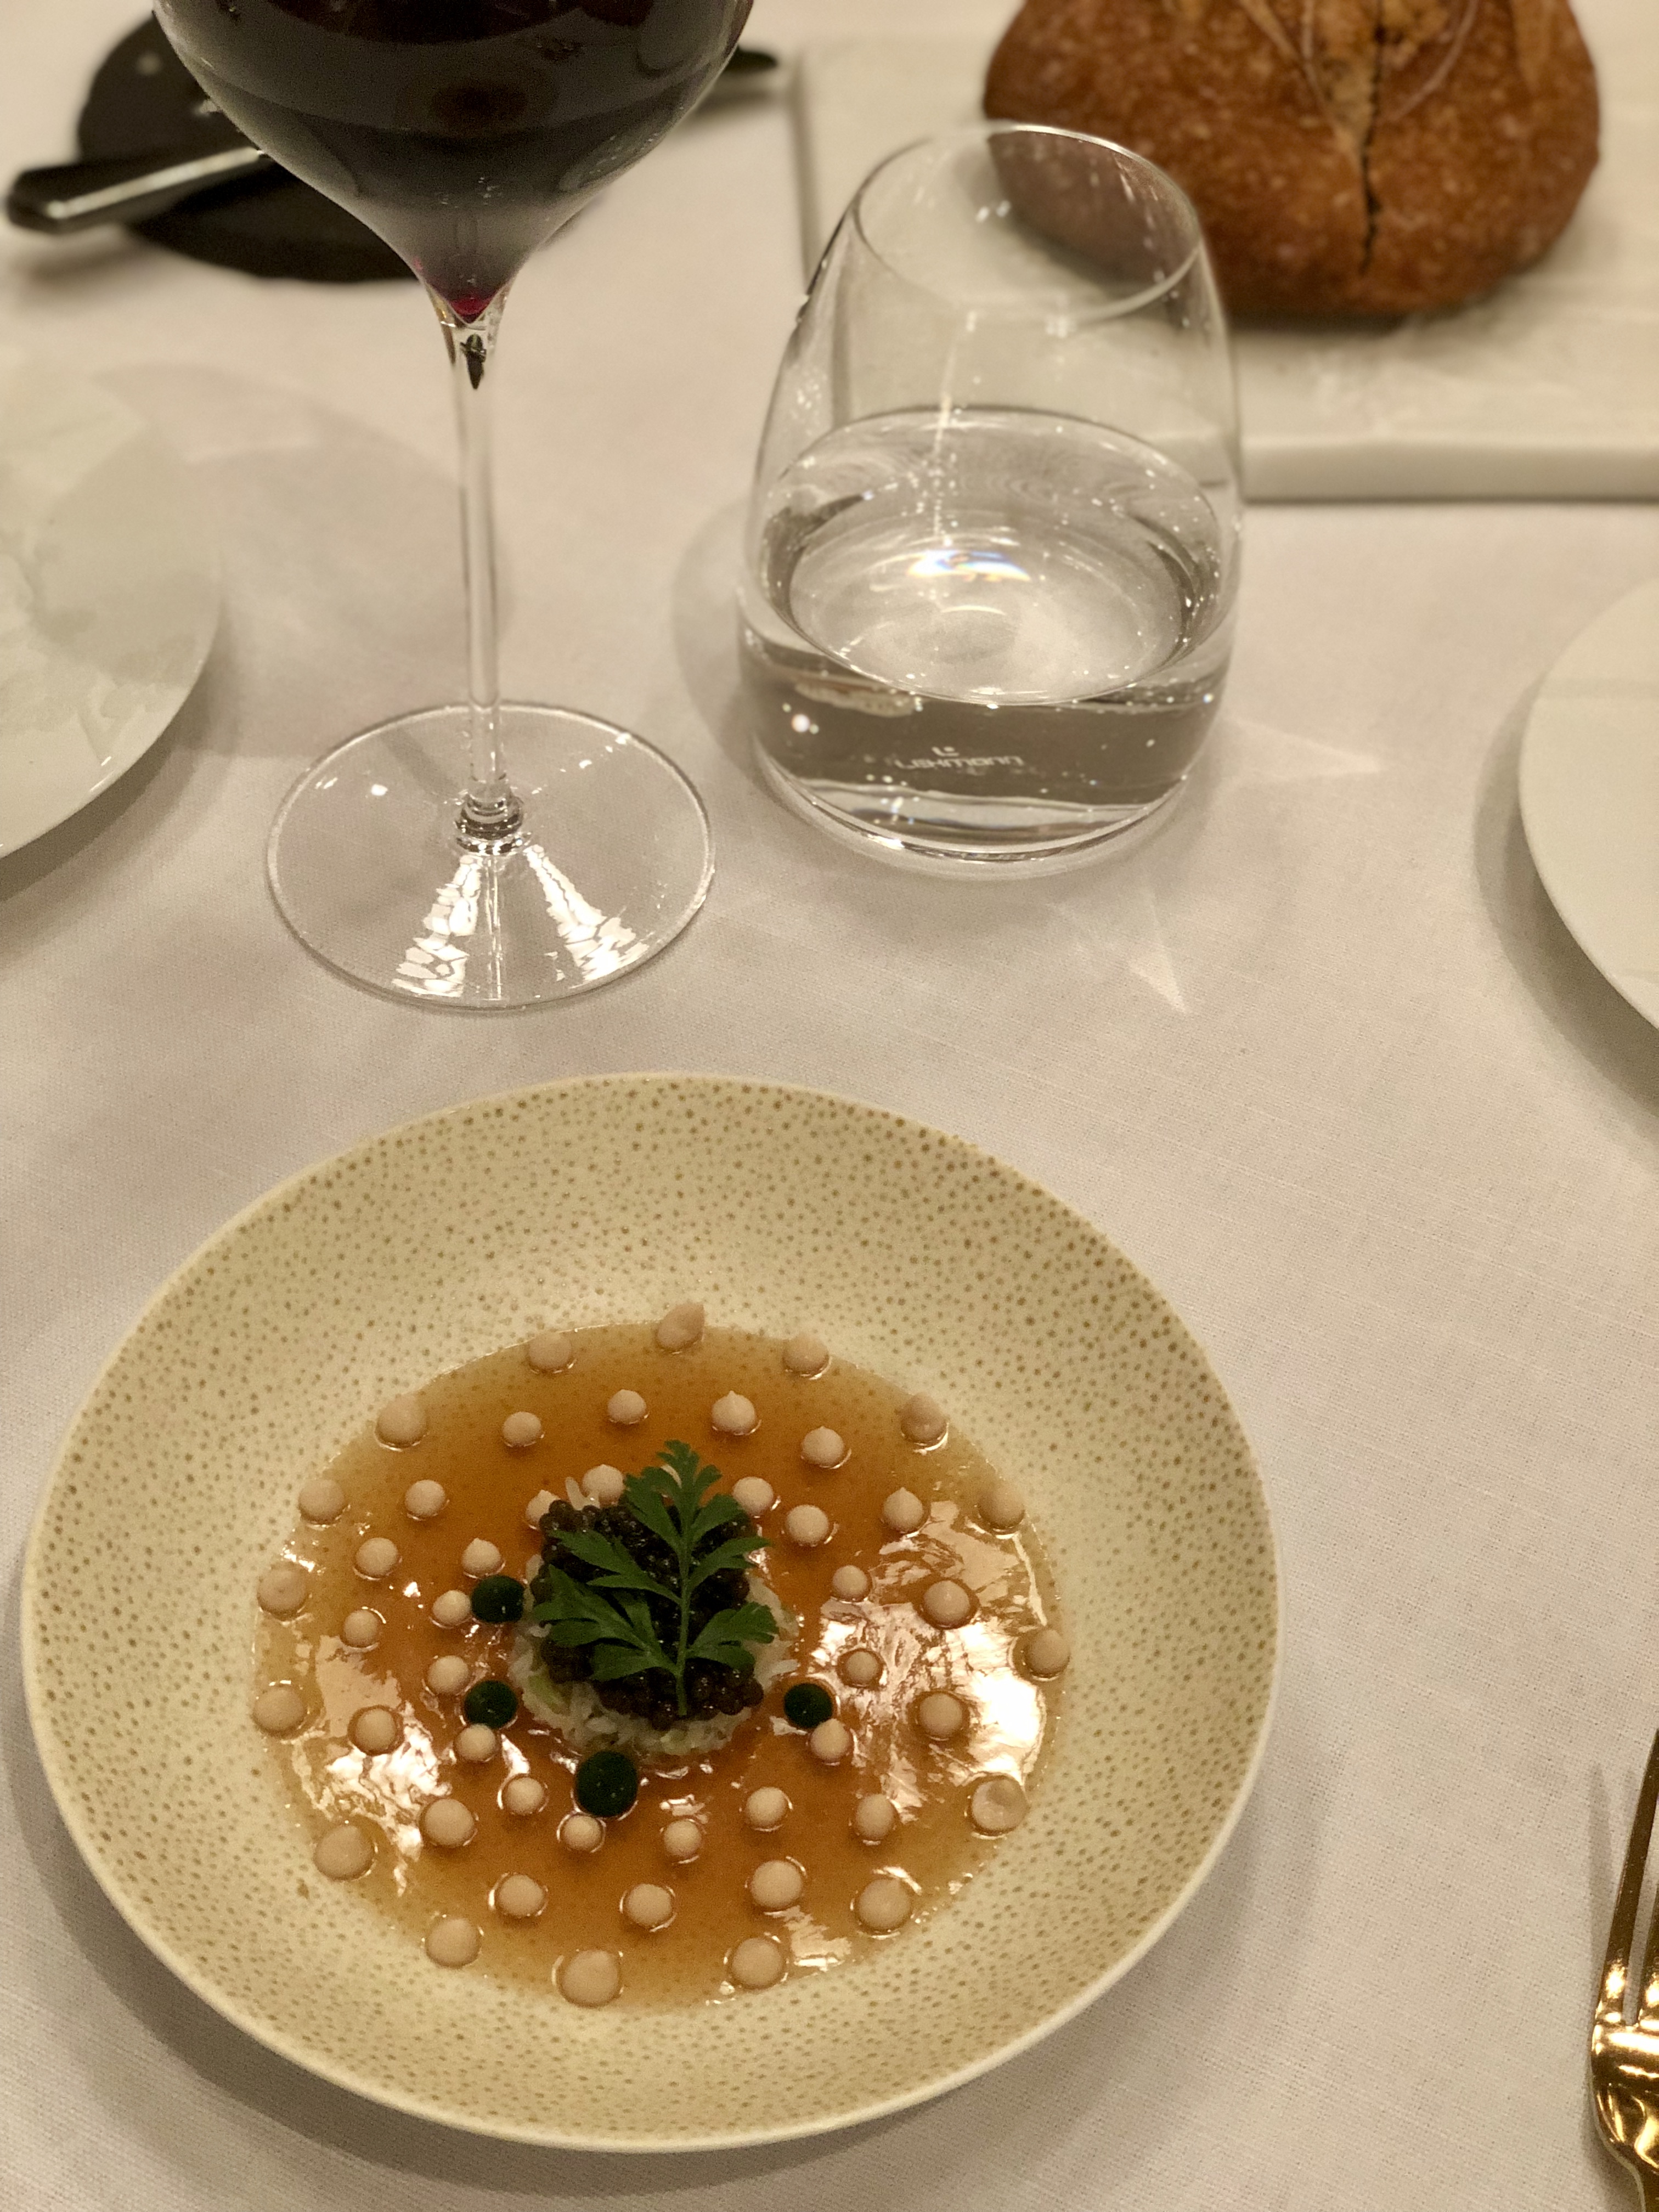 tourteau - caviar - fer à cheval - entrée - table du connetable - 1 etoile michelin - chantilly - auberge du jeu de paume - hotel 5 etoiles - restaurant gastronomique - julien lucas